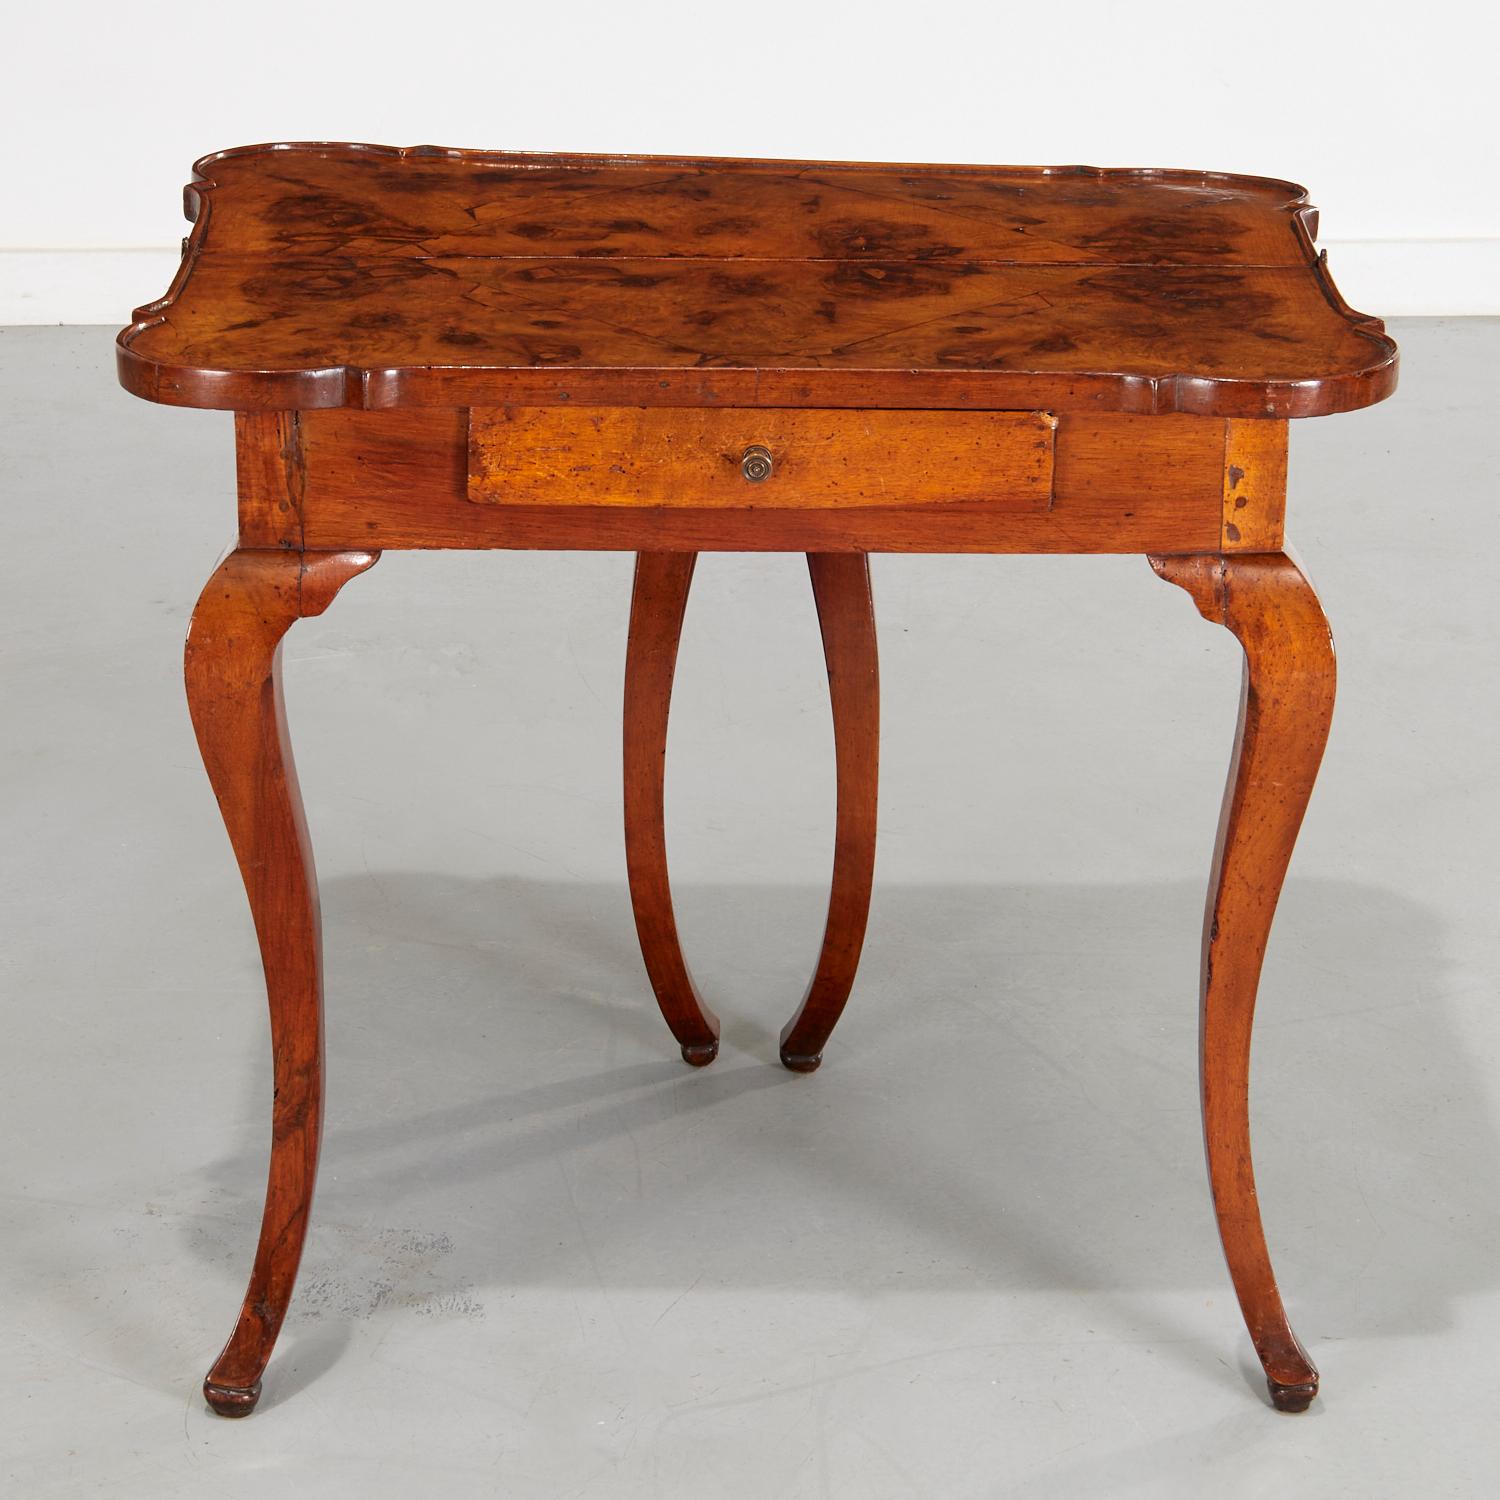 19. Jh., ein seltener osteuropäisch/zirkassischer Spieltisch mit besonders schöner Farbe und Holzmaserung. Die geformte Scharnierplatte befindet sich über einer einzelnen Friesschublade, die auf Cabriole-Beinen ruht, und die offene Tischplatte ist